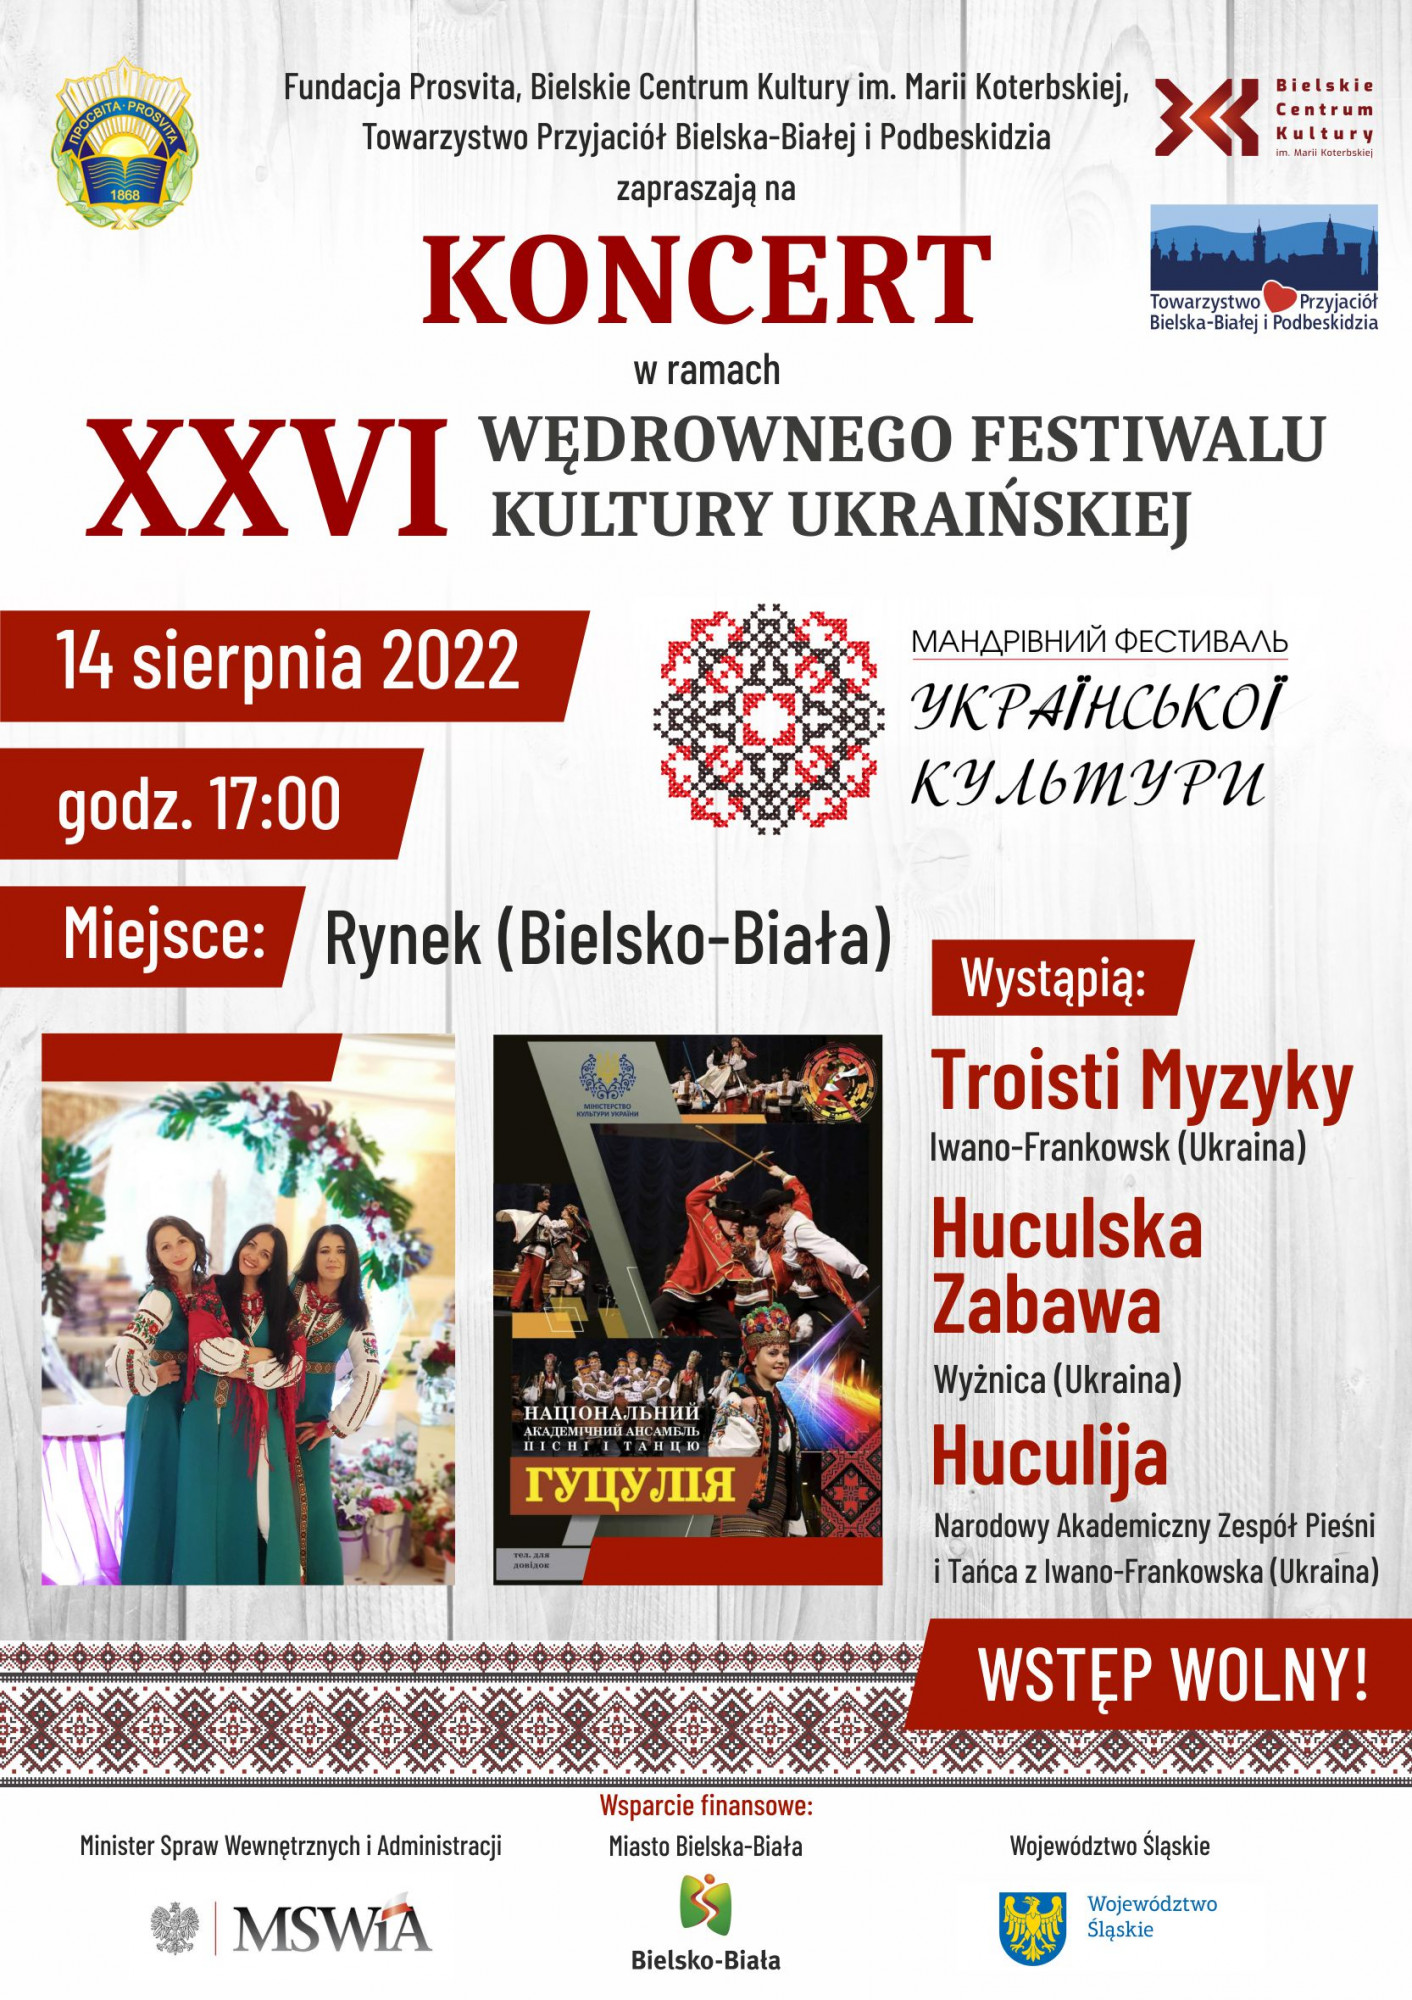 Koncert 26. Wędrownego Festiwalu Kultury Ukraińskiej 